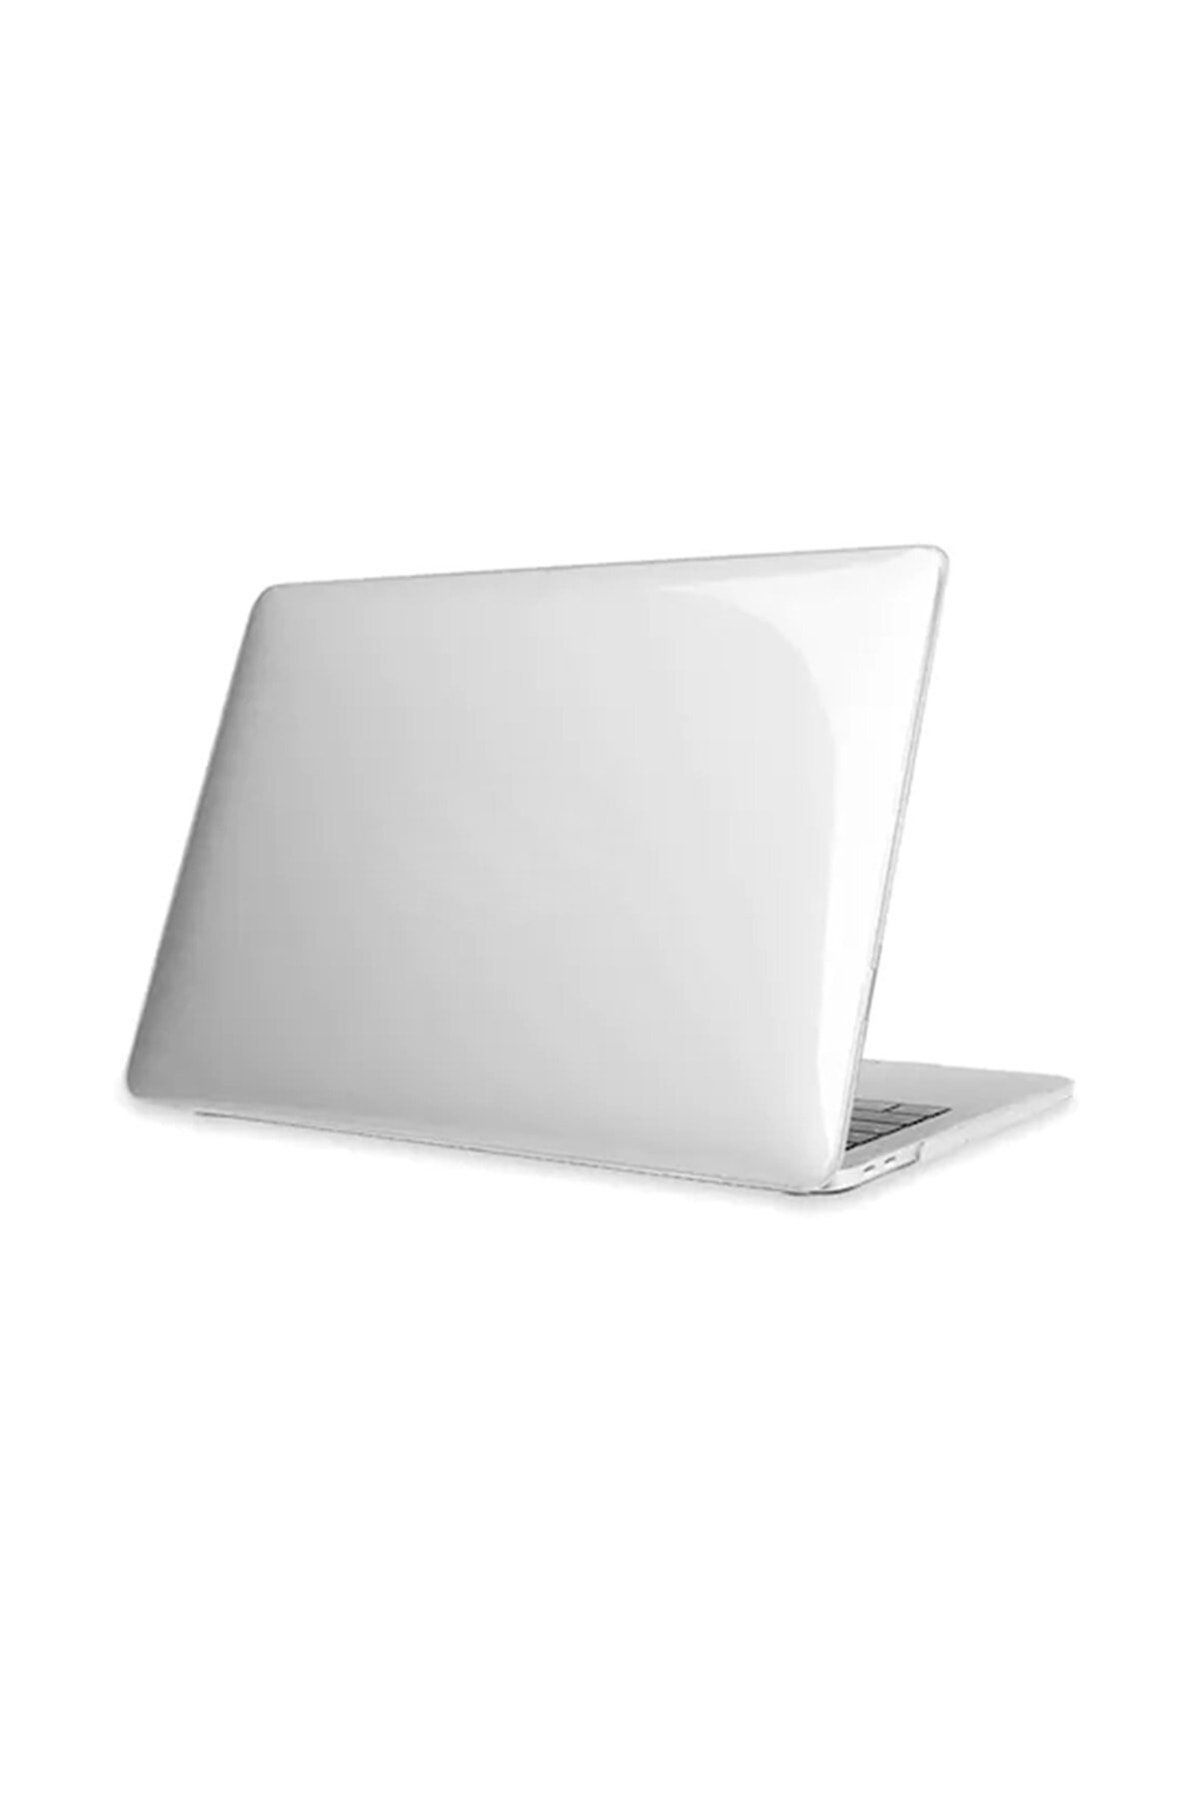 TEKNETSTORE Macbook Pro 13 M1-m2 Çip 2020/2022 A2251-a2289-a2338-a1706-a1708-a2159 Kristal Kapak Koruma Kılıf